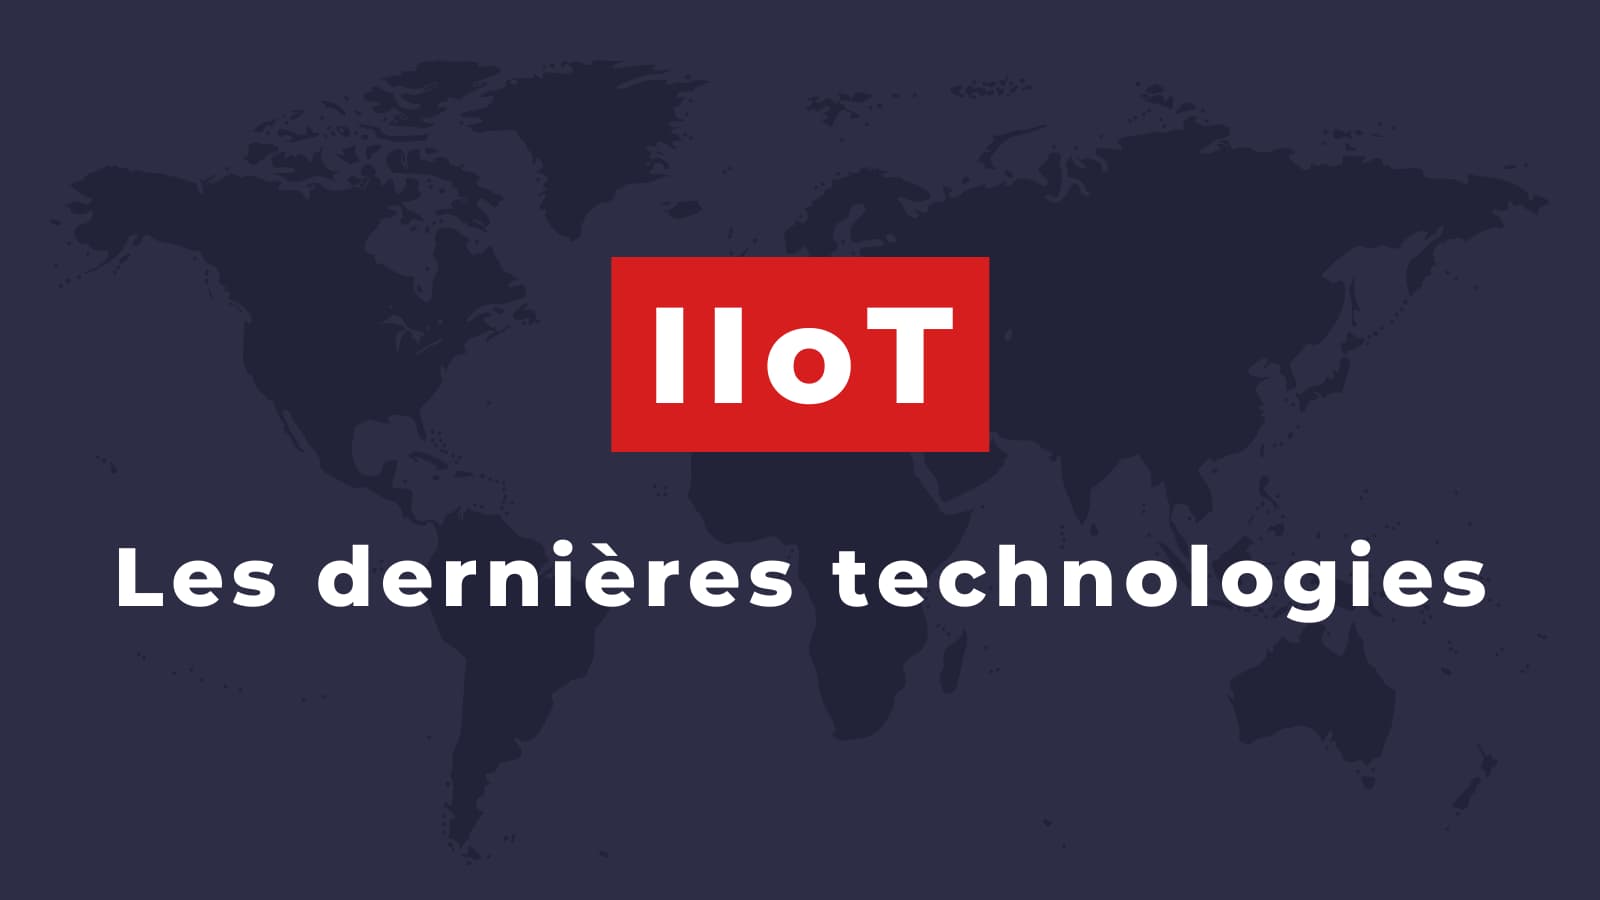 Les dernières technologies de l'IIoT